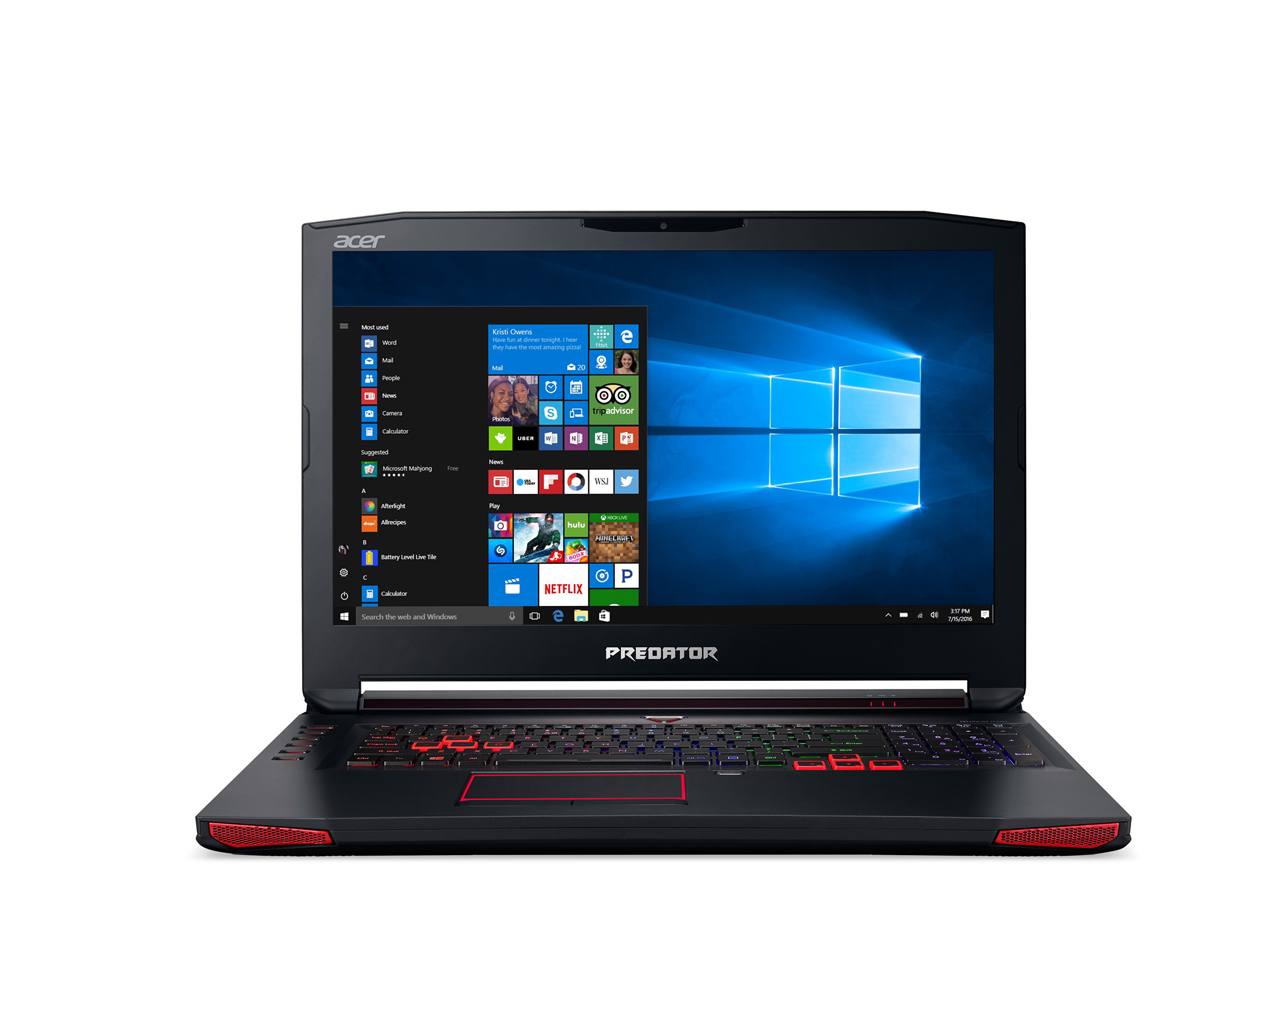 Acer Predator 17 G9-793-77LN - Notebookcheck.net External Reviews1280 x 1024